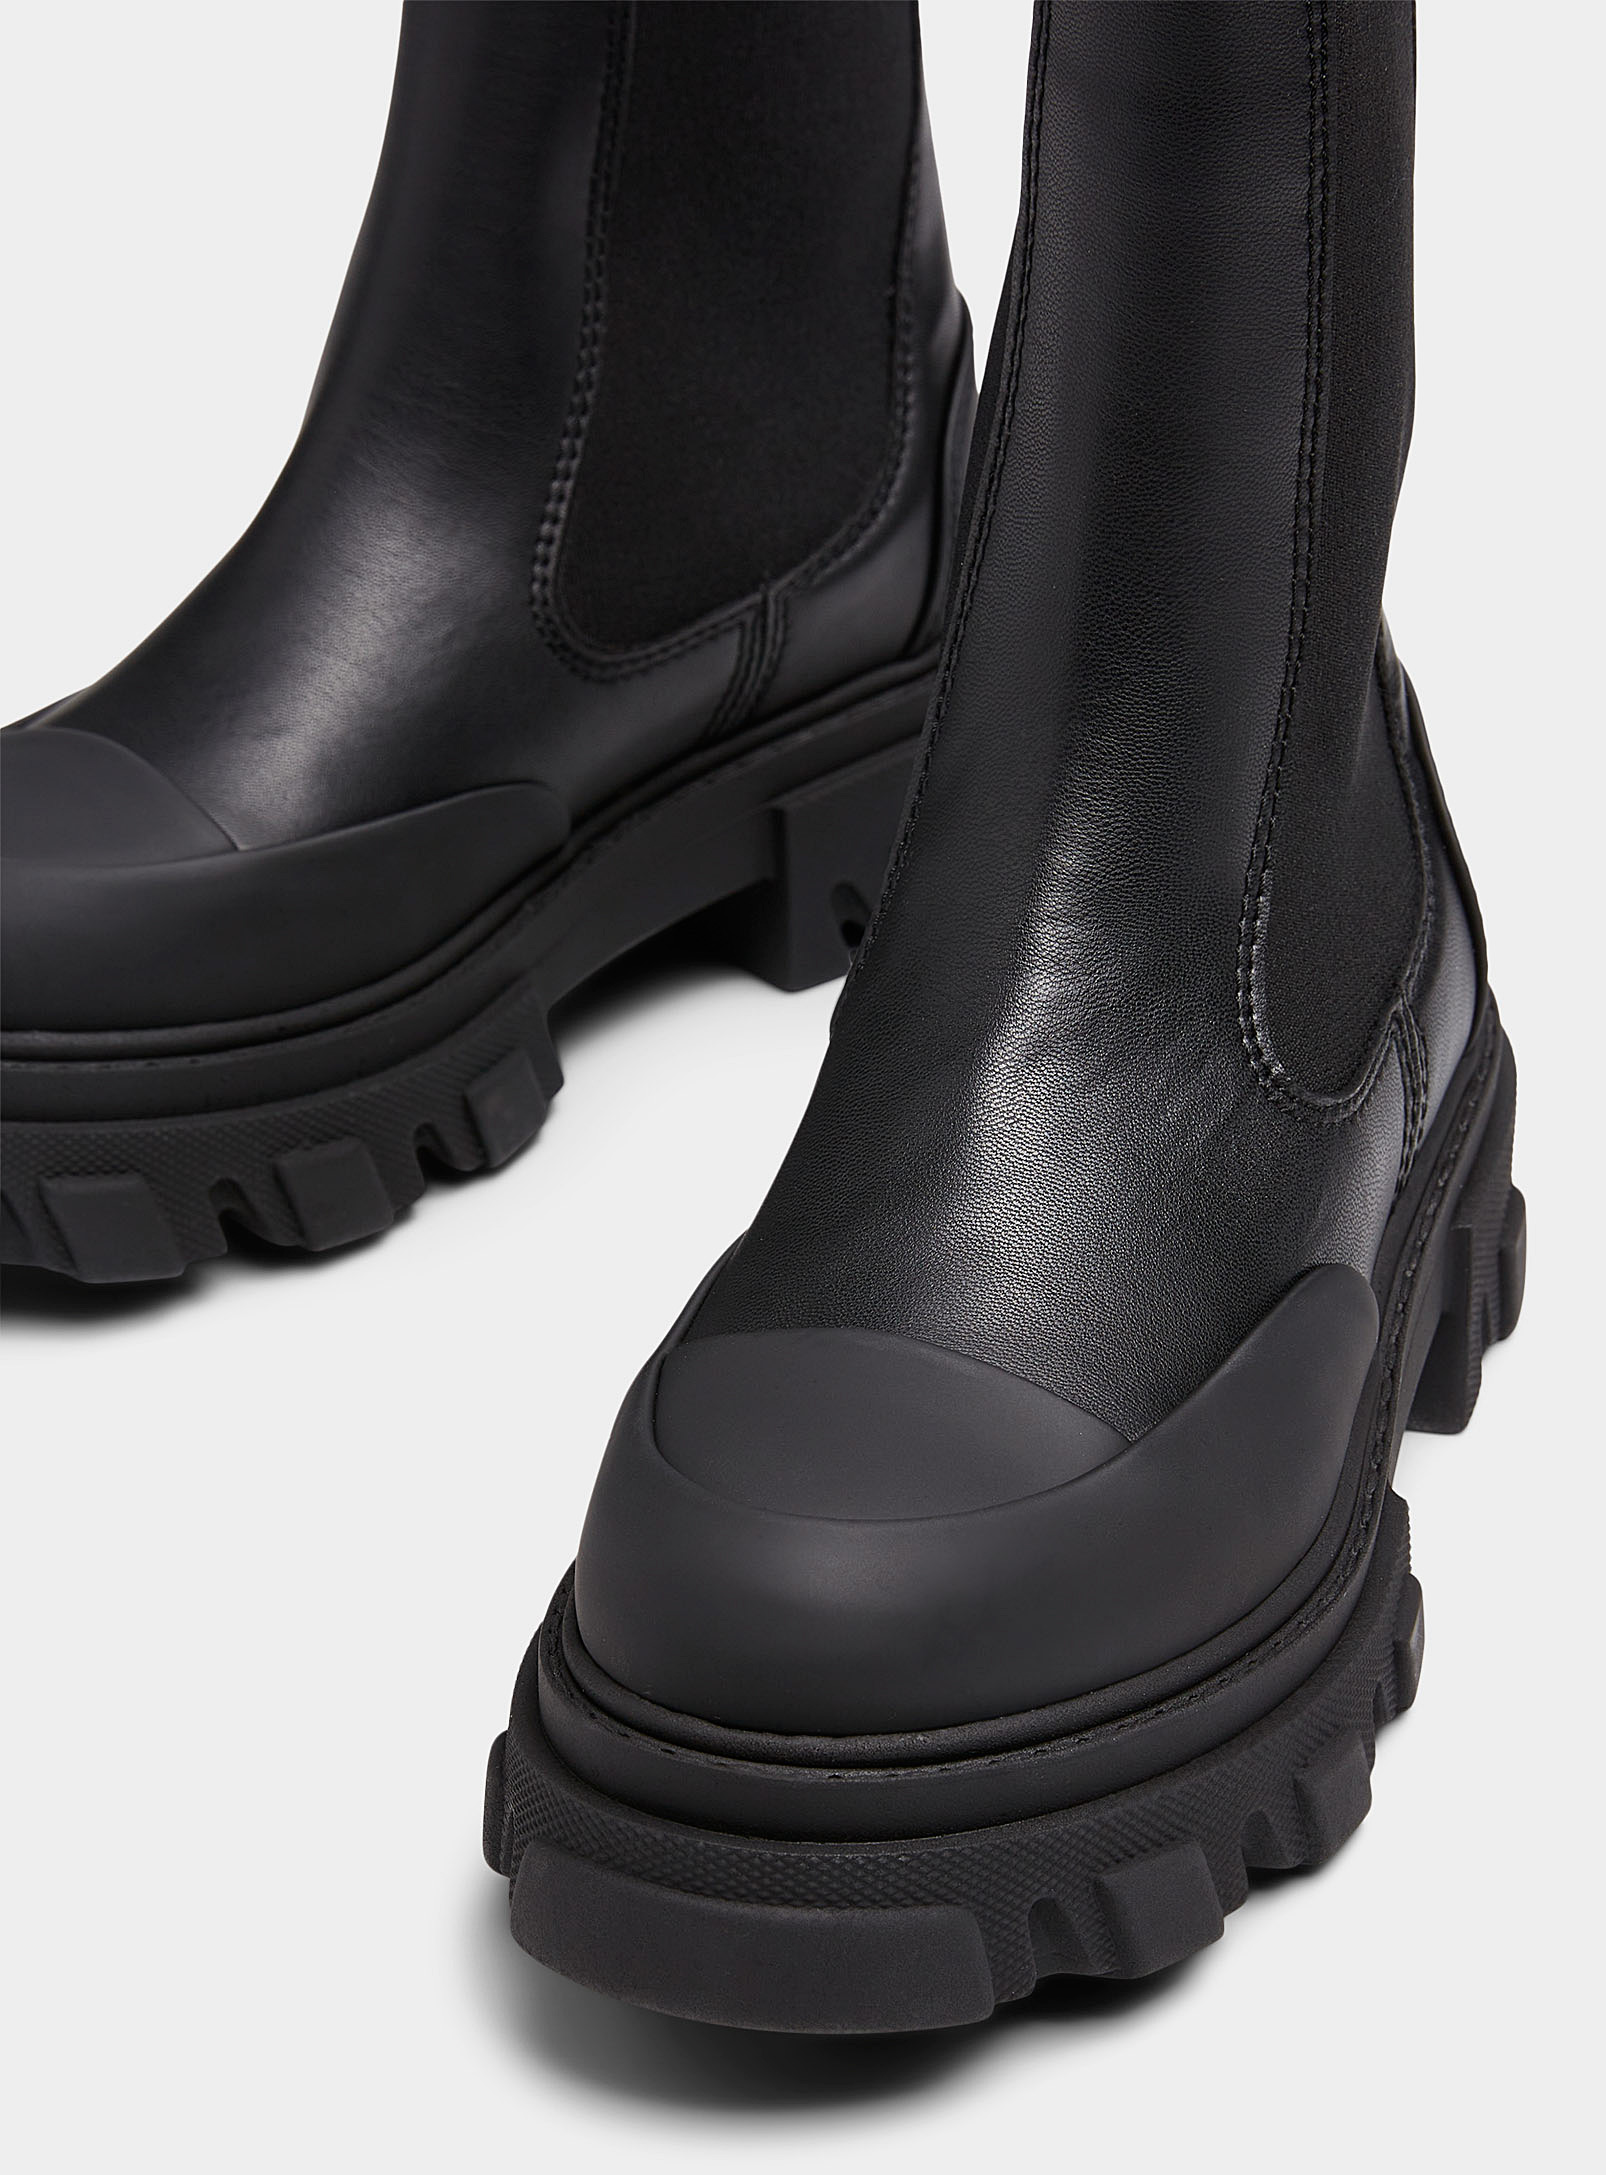 Ganni - Chaussures La Botte Chelsea haute cuir recyclé noir d'encre Femme